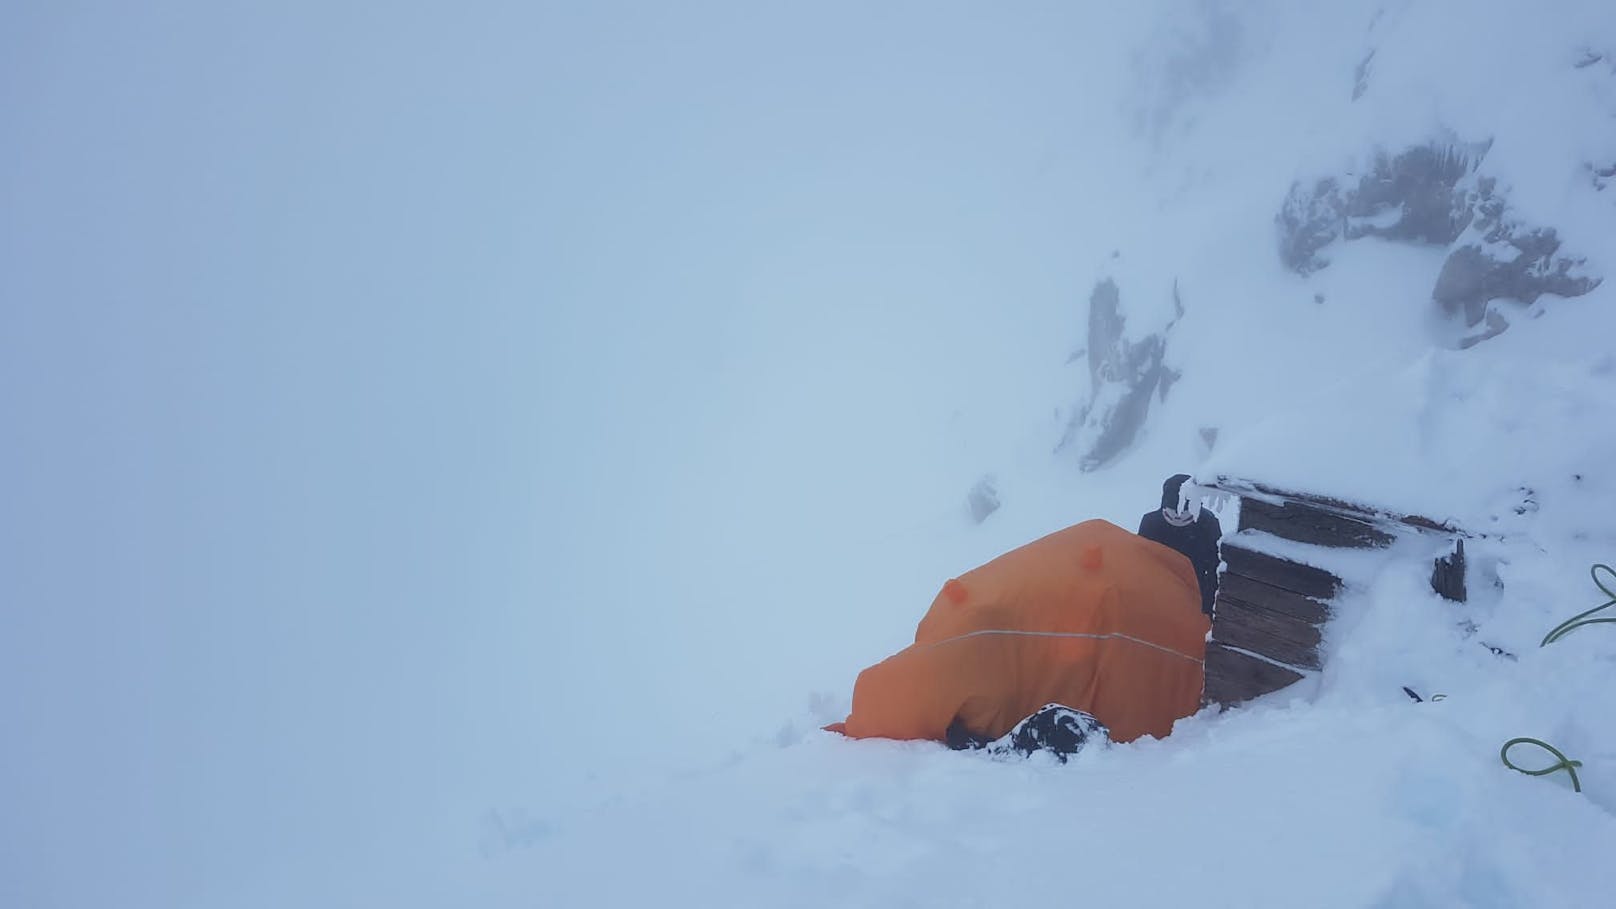 "Dort oben stürmte es wild, stellenweise lag der Schnee bis zu einem Meter hoch", so&nbsp;Regina Poberschnigg von der <a href="https://www.heute.at/s/80-jaehriger-stuerzte-bei-klettertour-am-schneeberg-ab-100160284">Bergrettung</a> Ehrwald